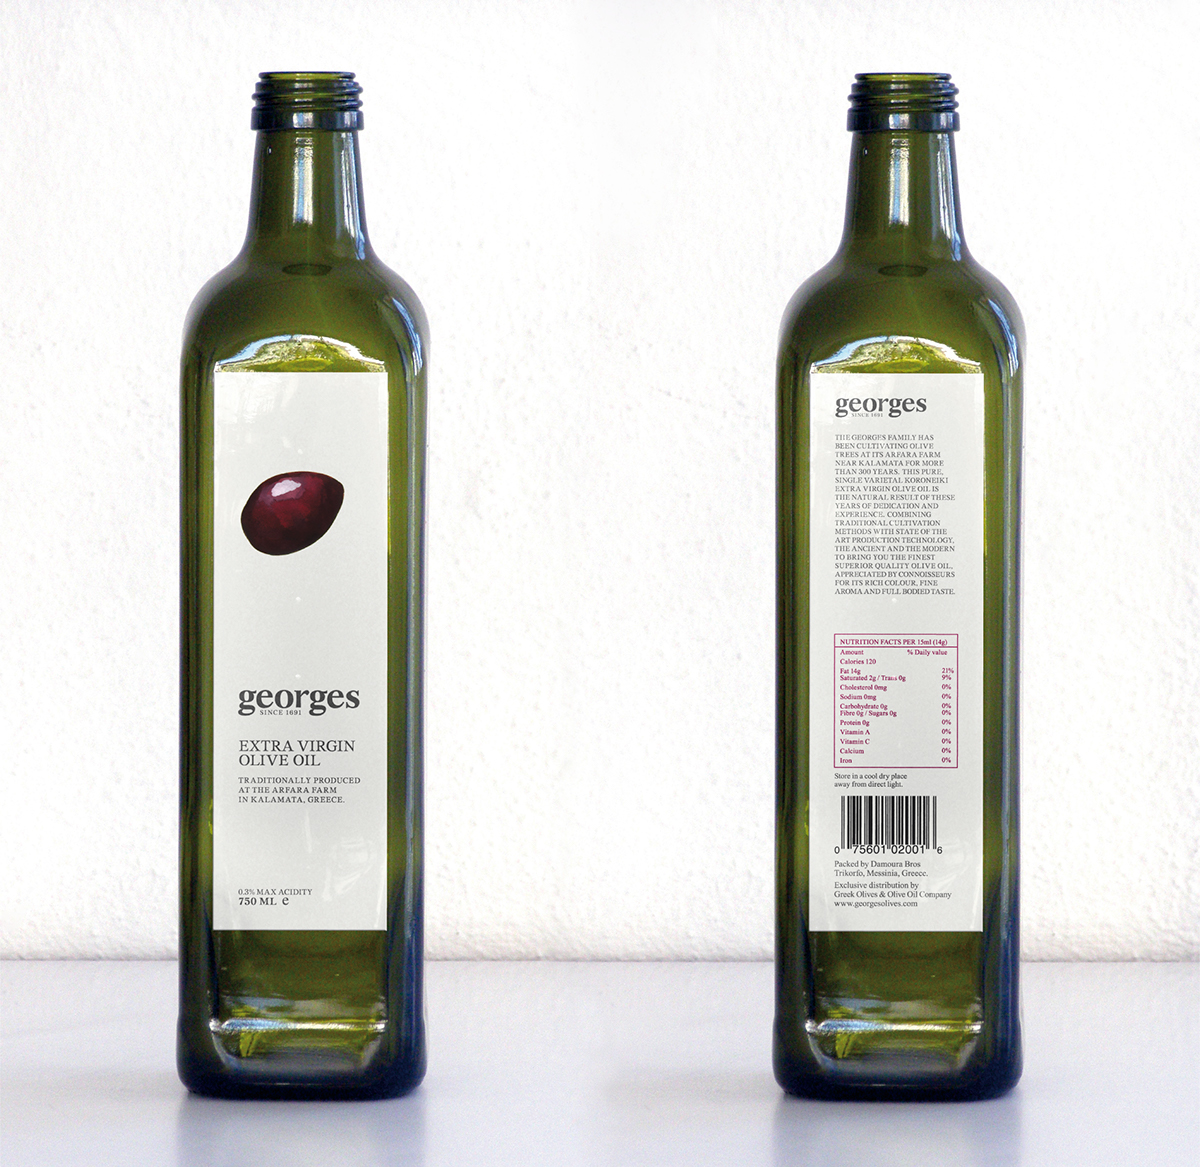 greek olive oil bottle can